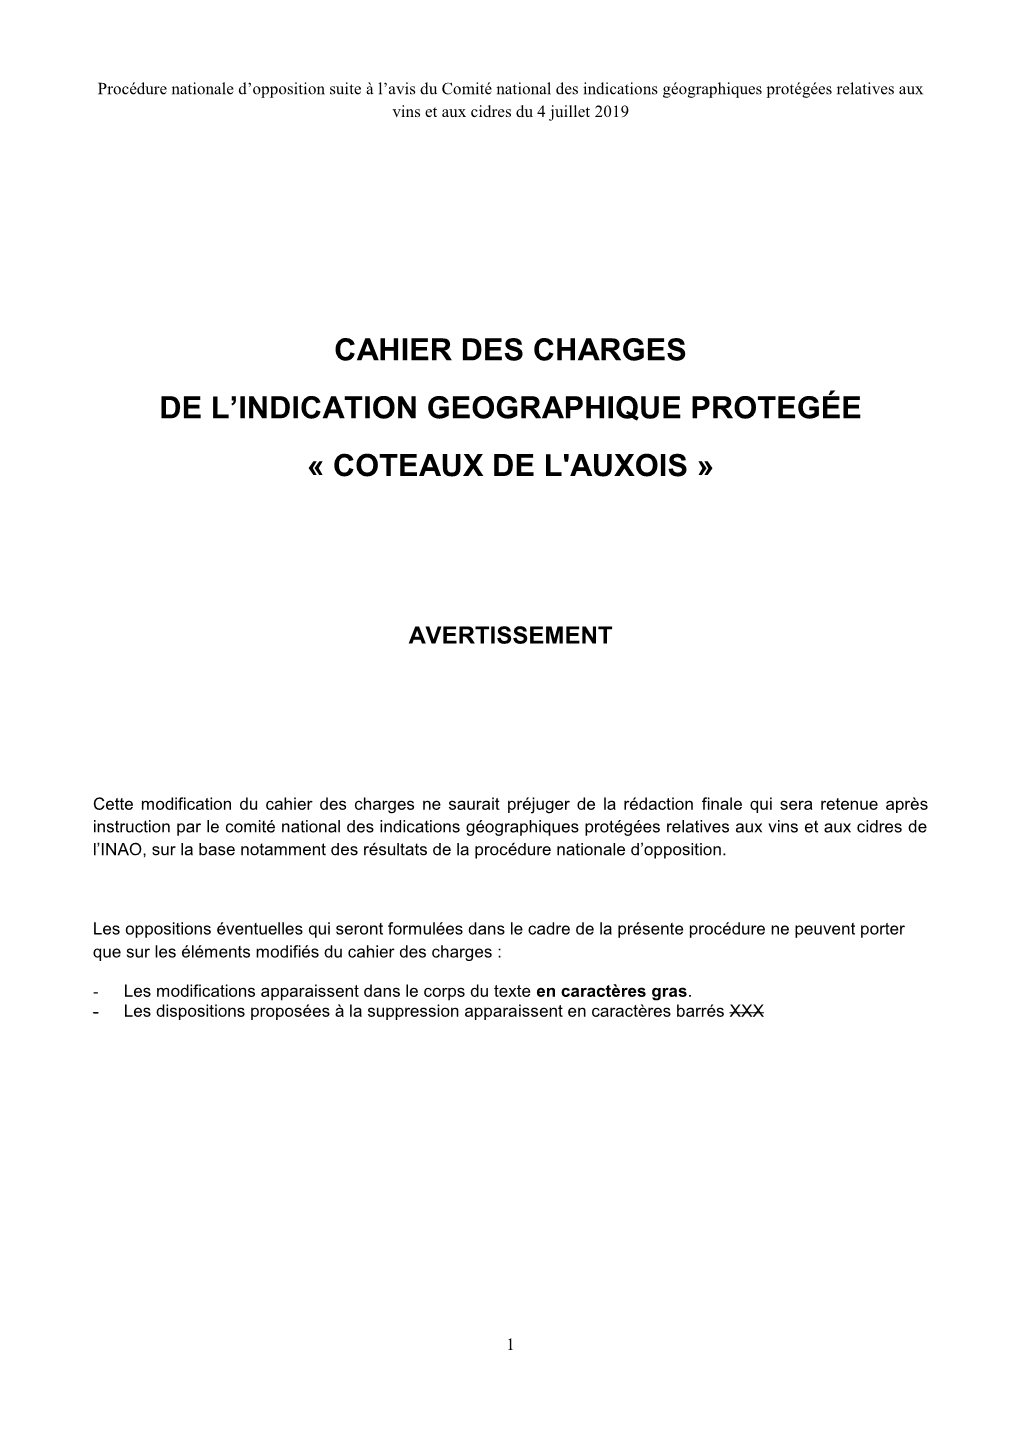 Cahier Des Charges De L'indication Geographique Protegée « Coteaux